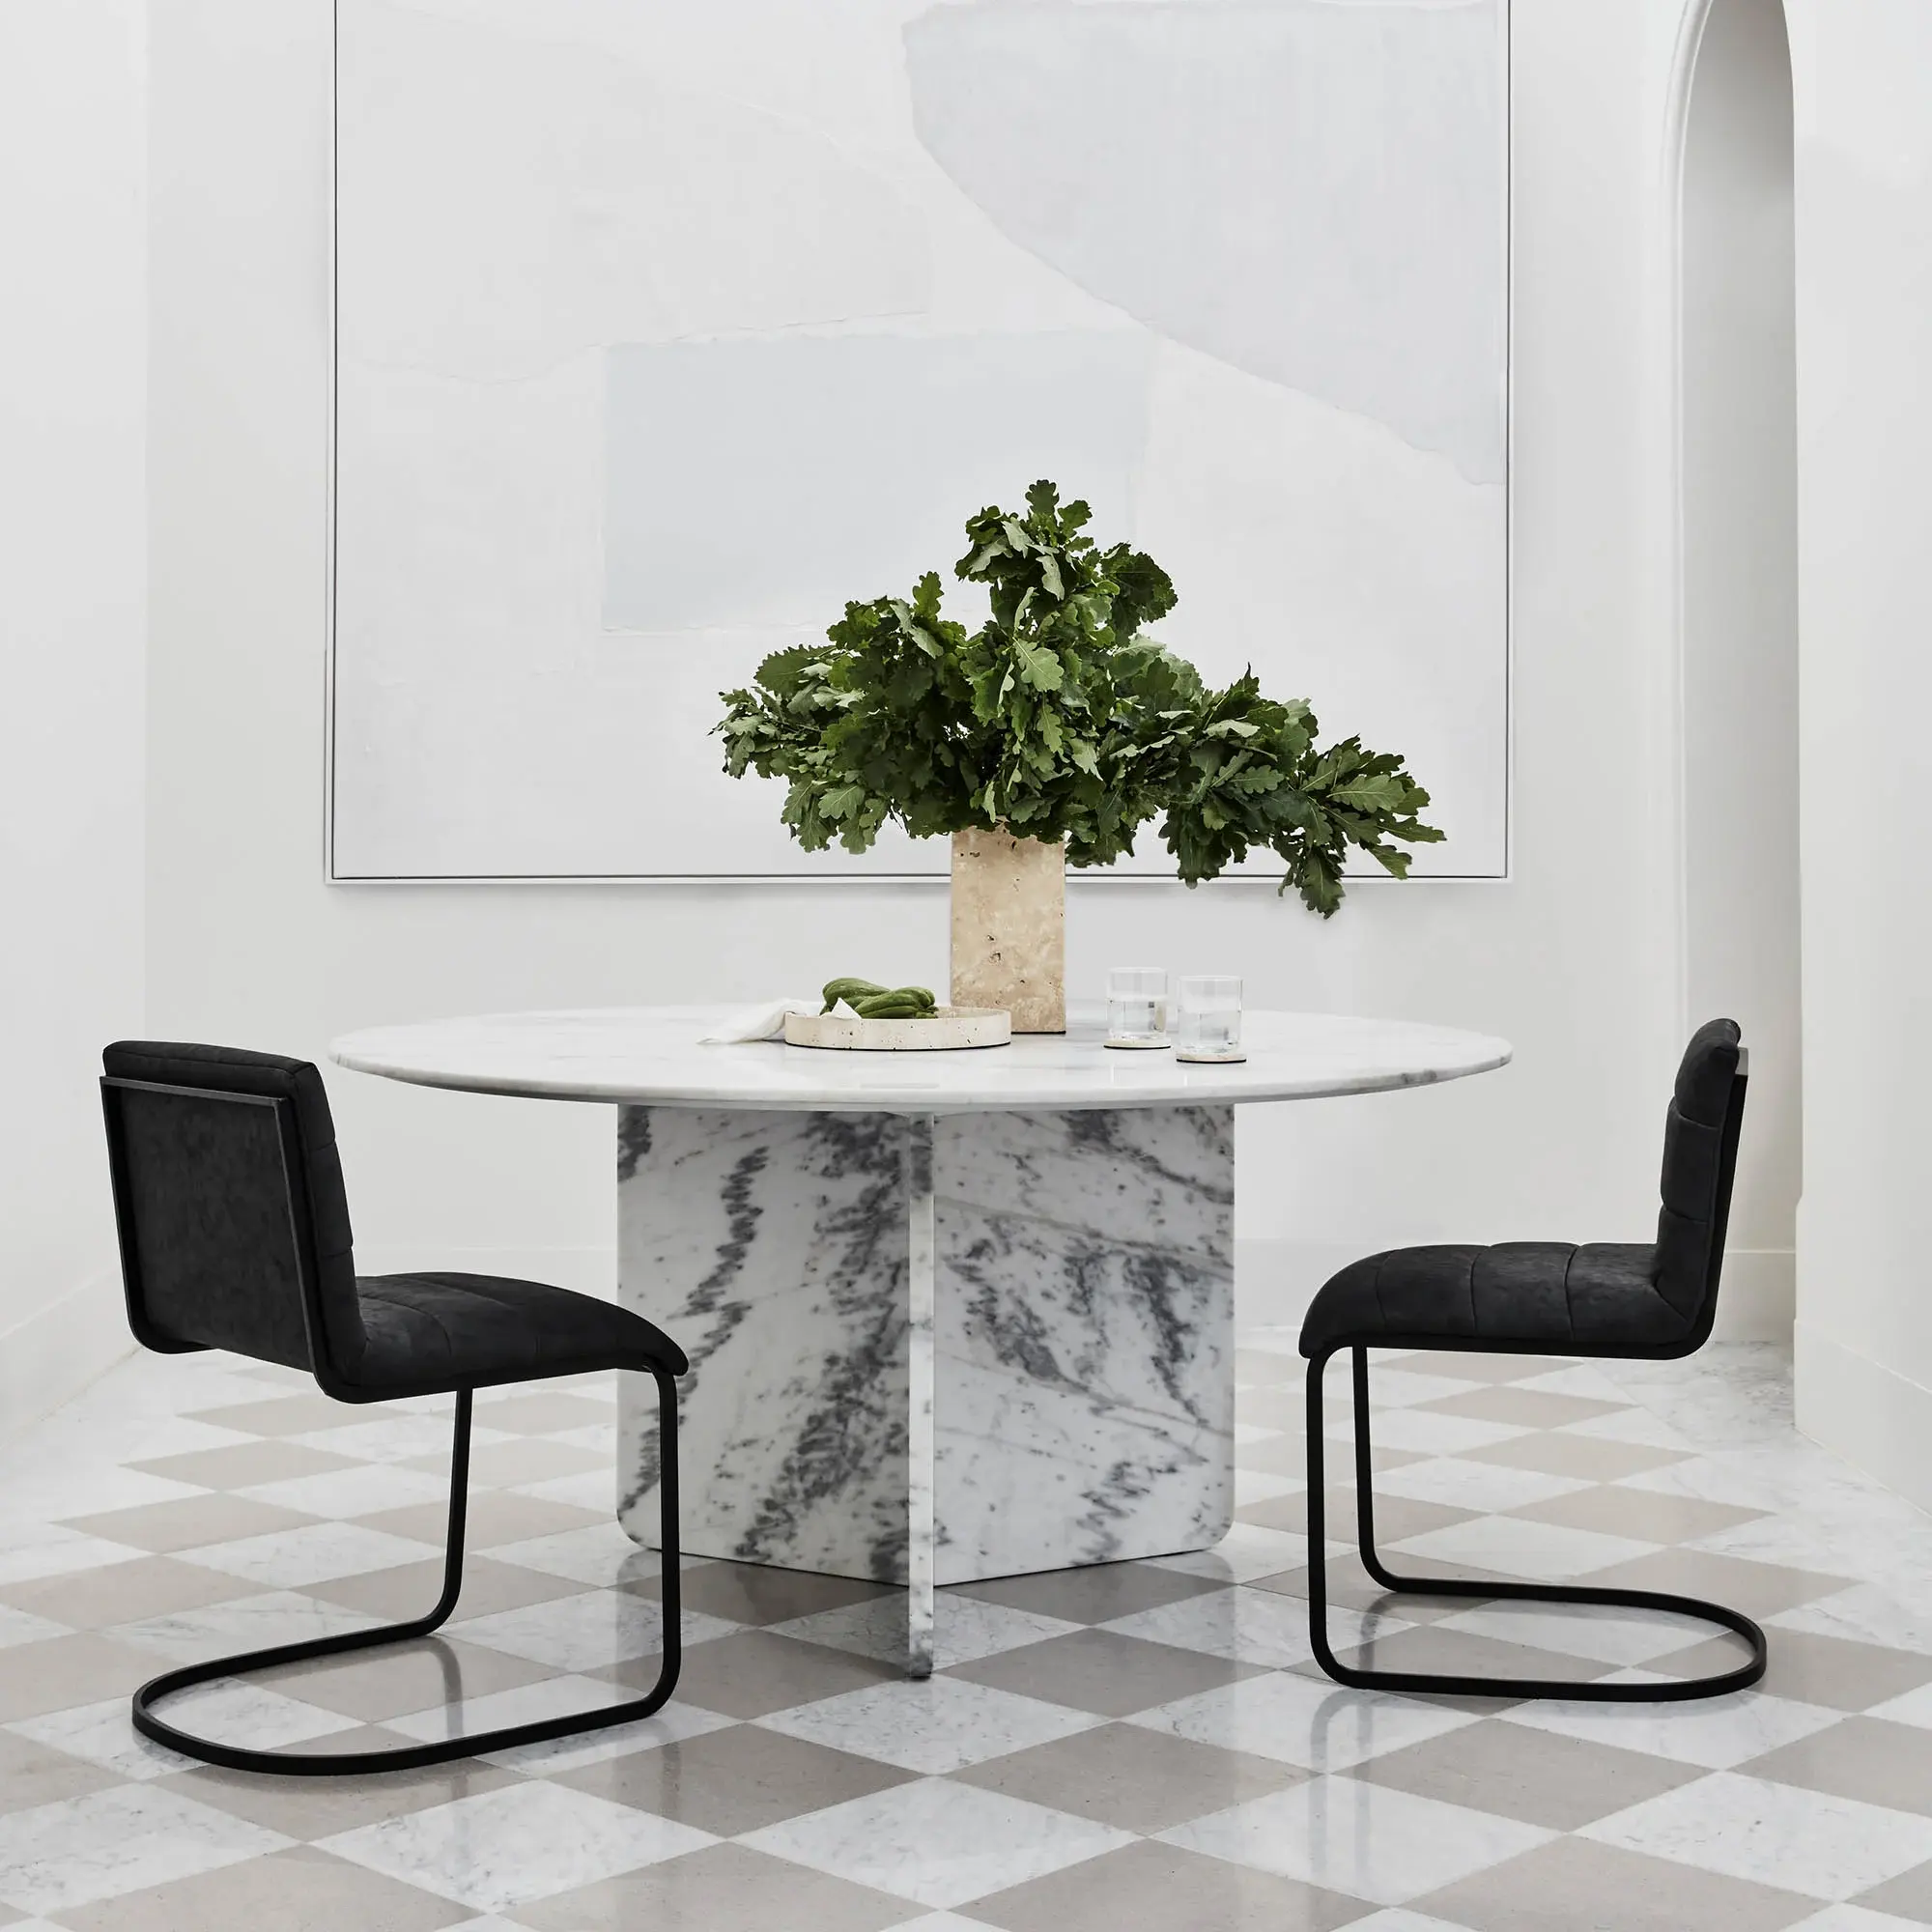 Table à manger acrylique invisible noir dinde marbre doré rond bois effezeta gg narra coloré mètre moderne